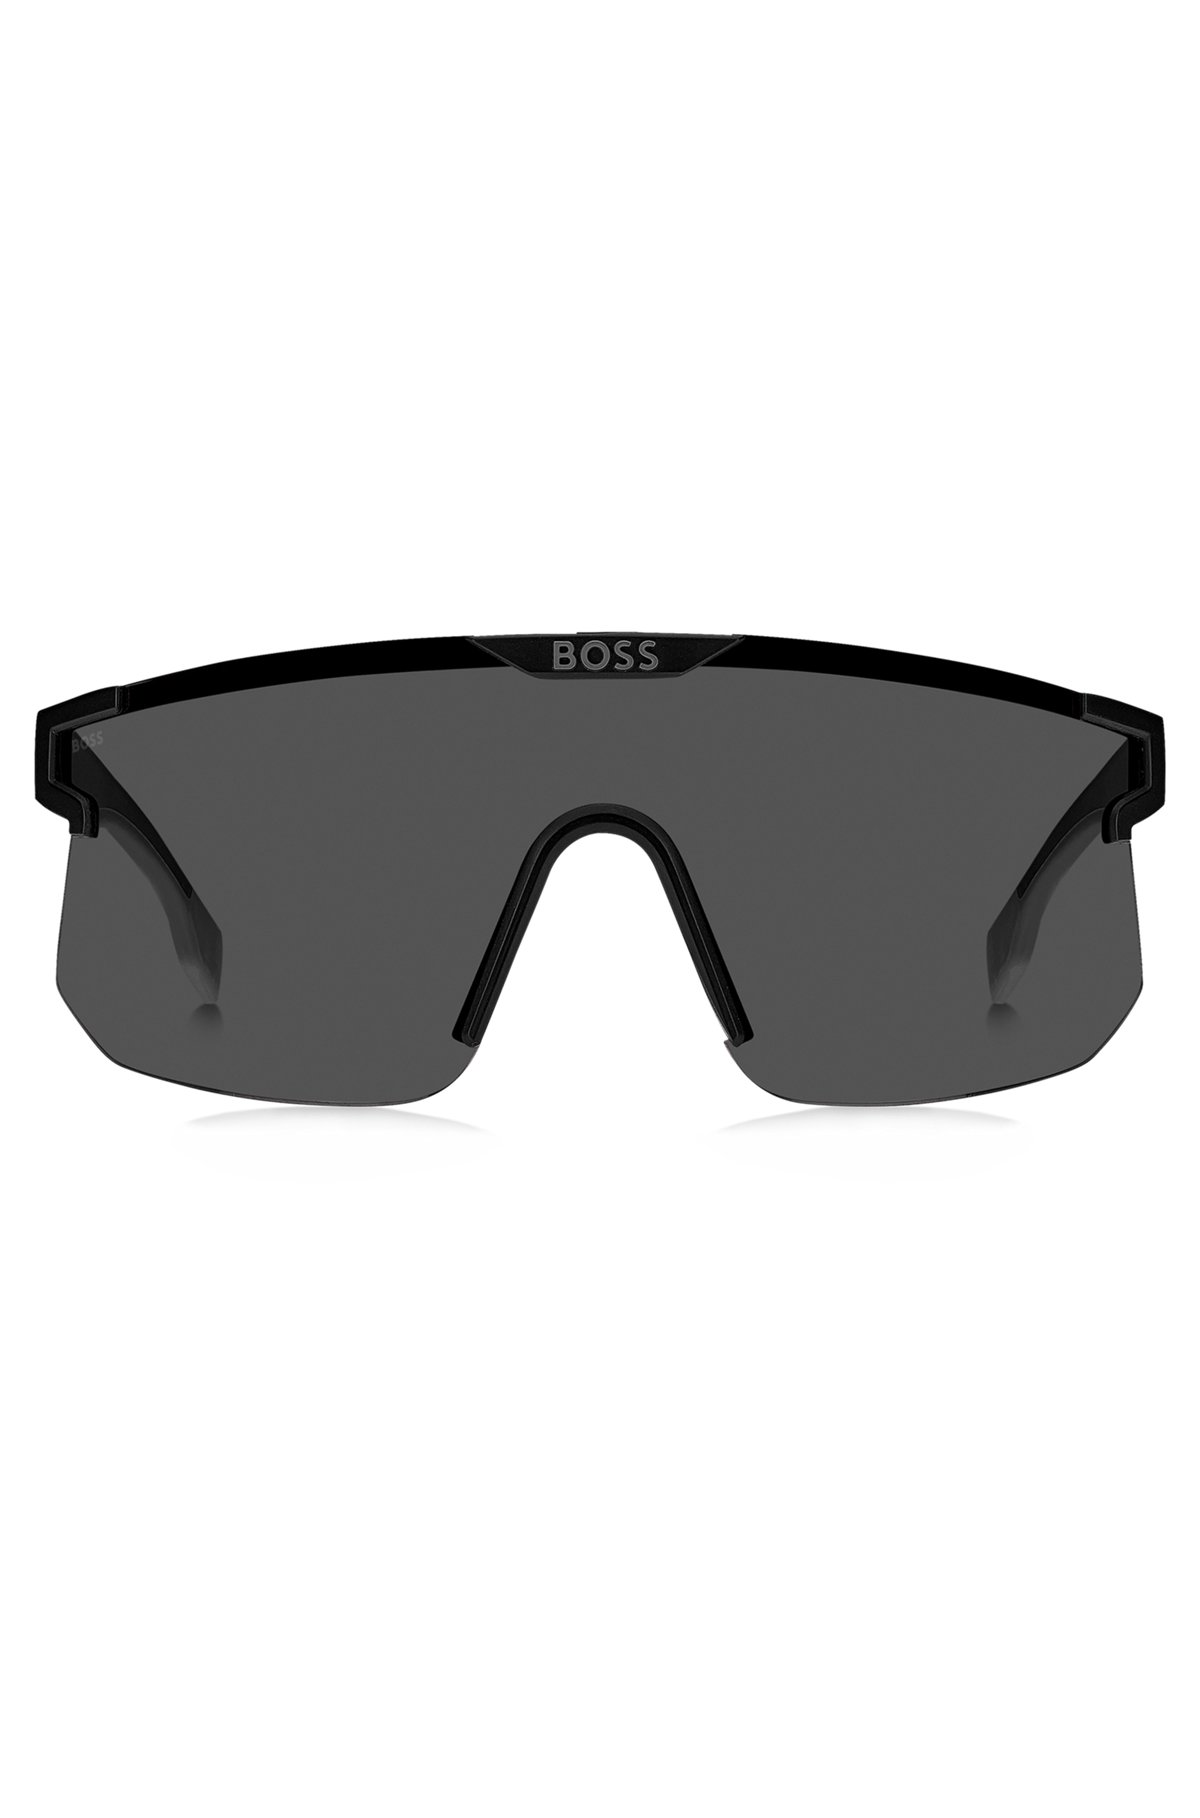 Gafas de sol de estilo máscara en color negro con detalle de la marca en puente y patillas, Negro